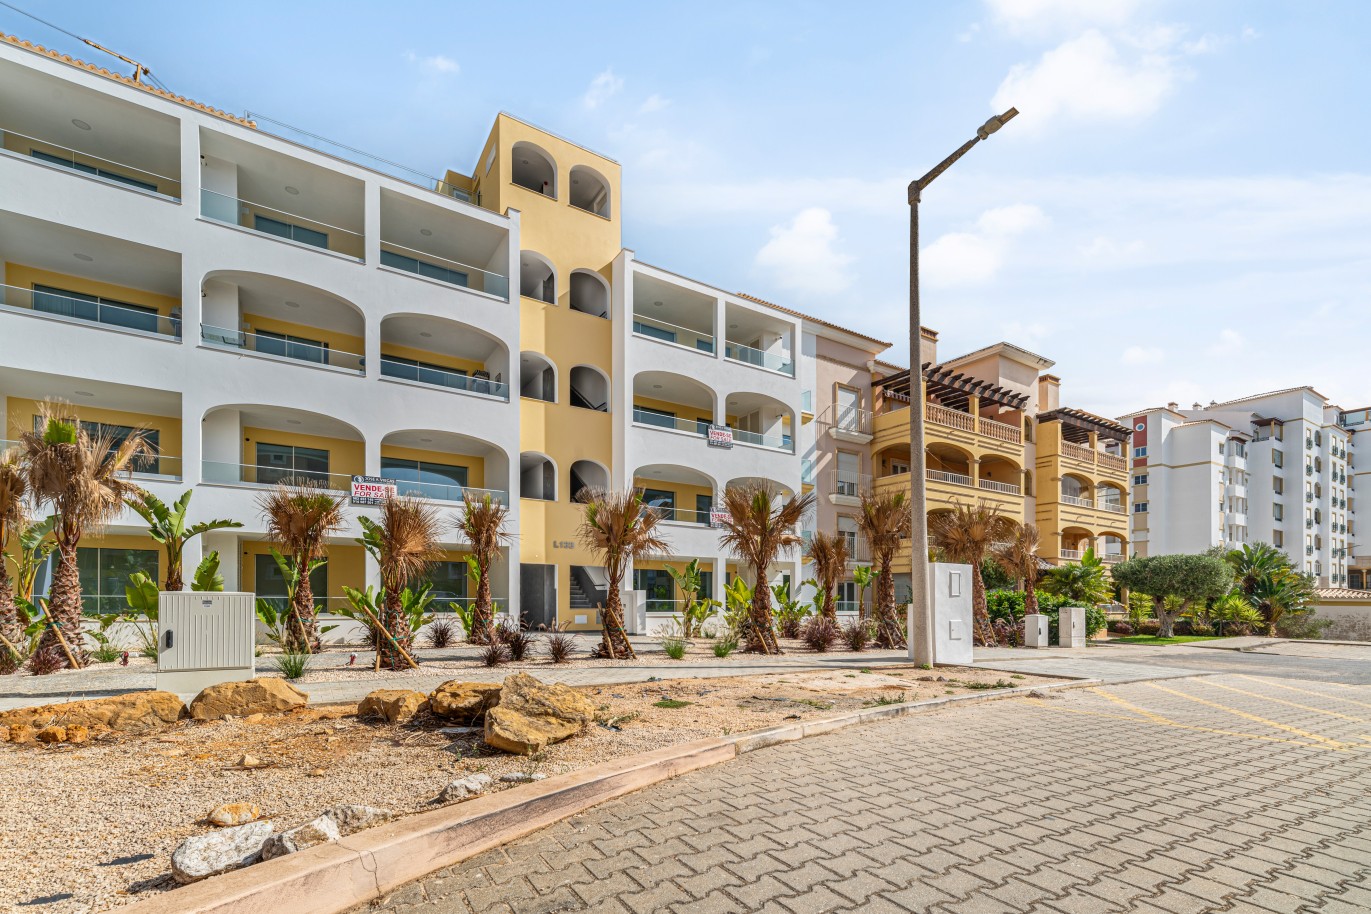 Verkauf einer Wohnung im Bau, mit Terrasse, Lagos, Algarve, Portugal_238598